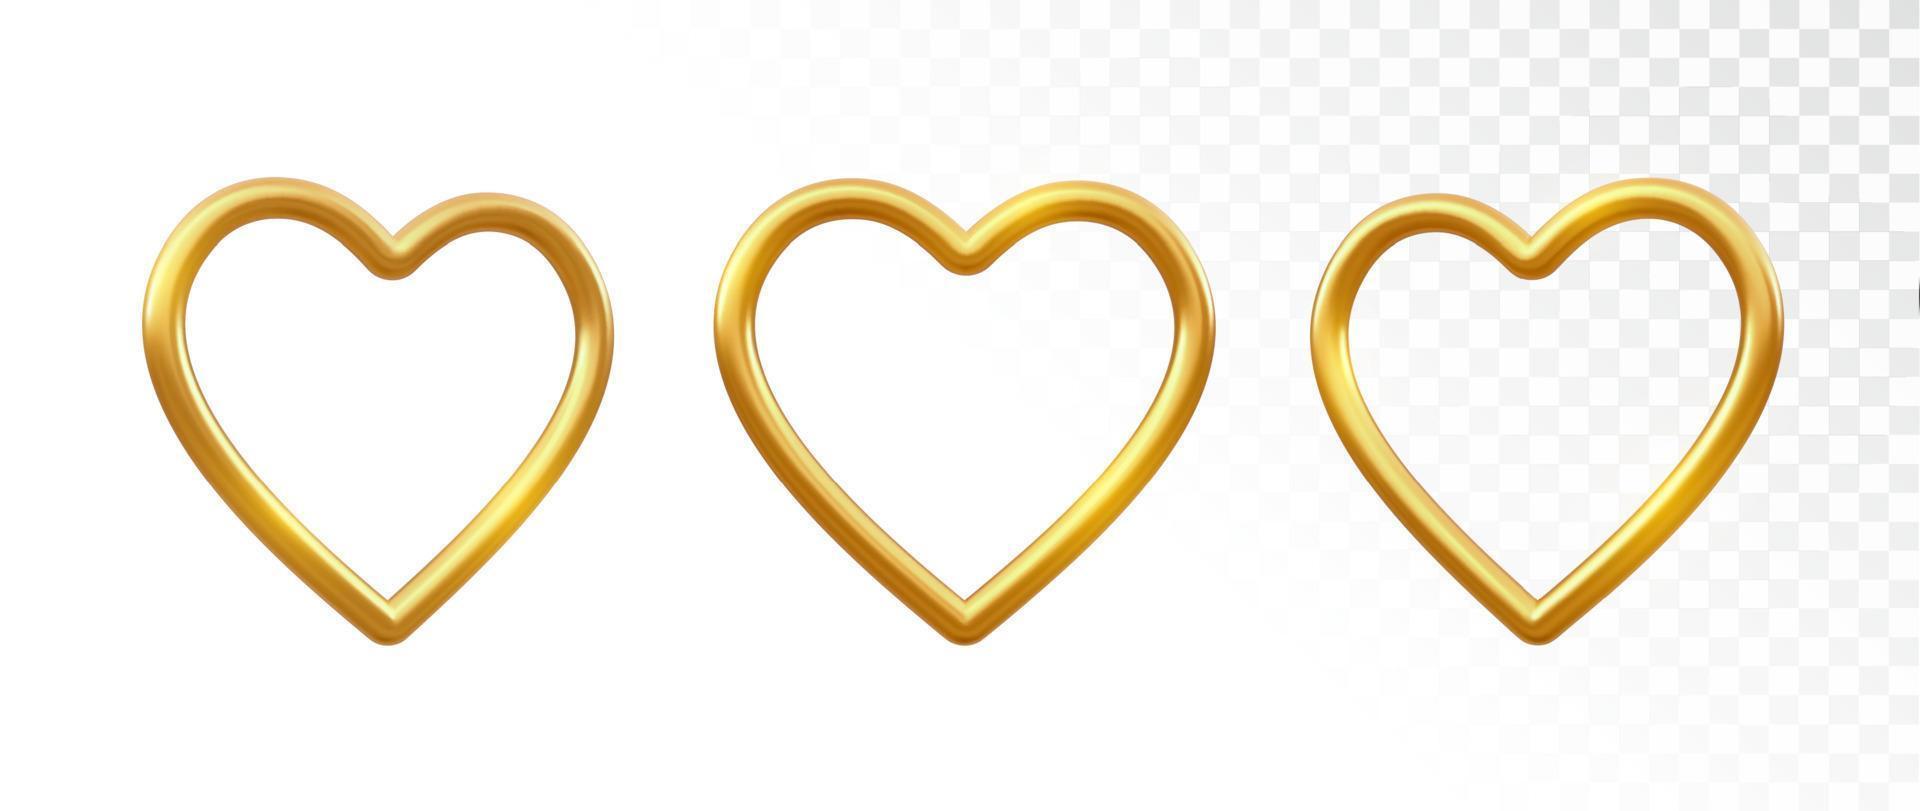 goldene Herzen. satz dekoratives 3d-realistisches glänzendes metallisches goldherz auf transparentem hintergrund. valentinstag gold luxus dekoration. Vektor-Illustration. vektor